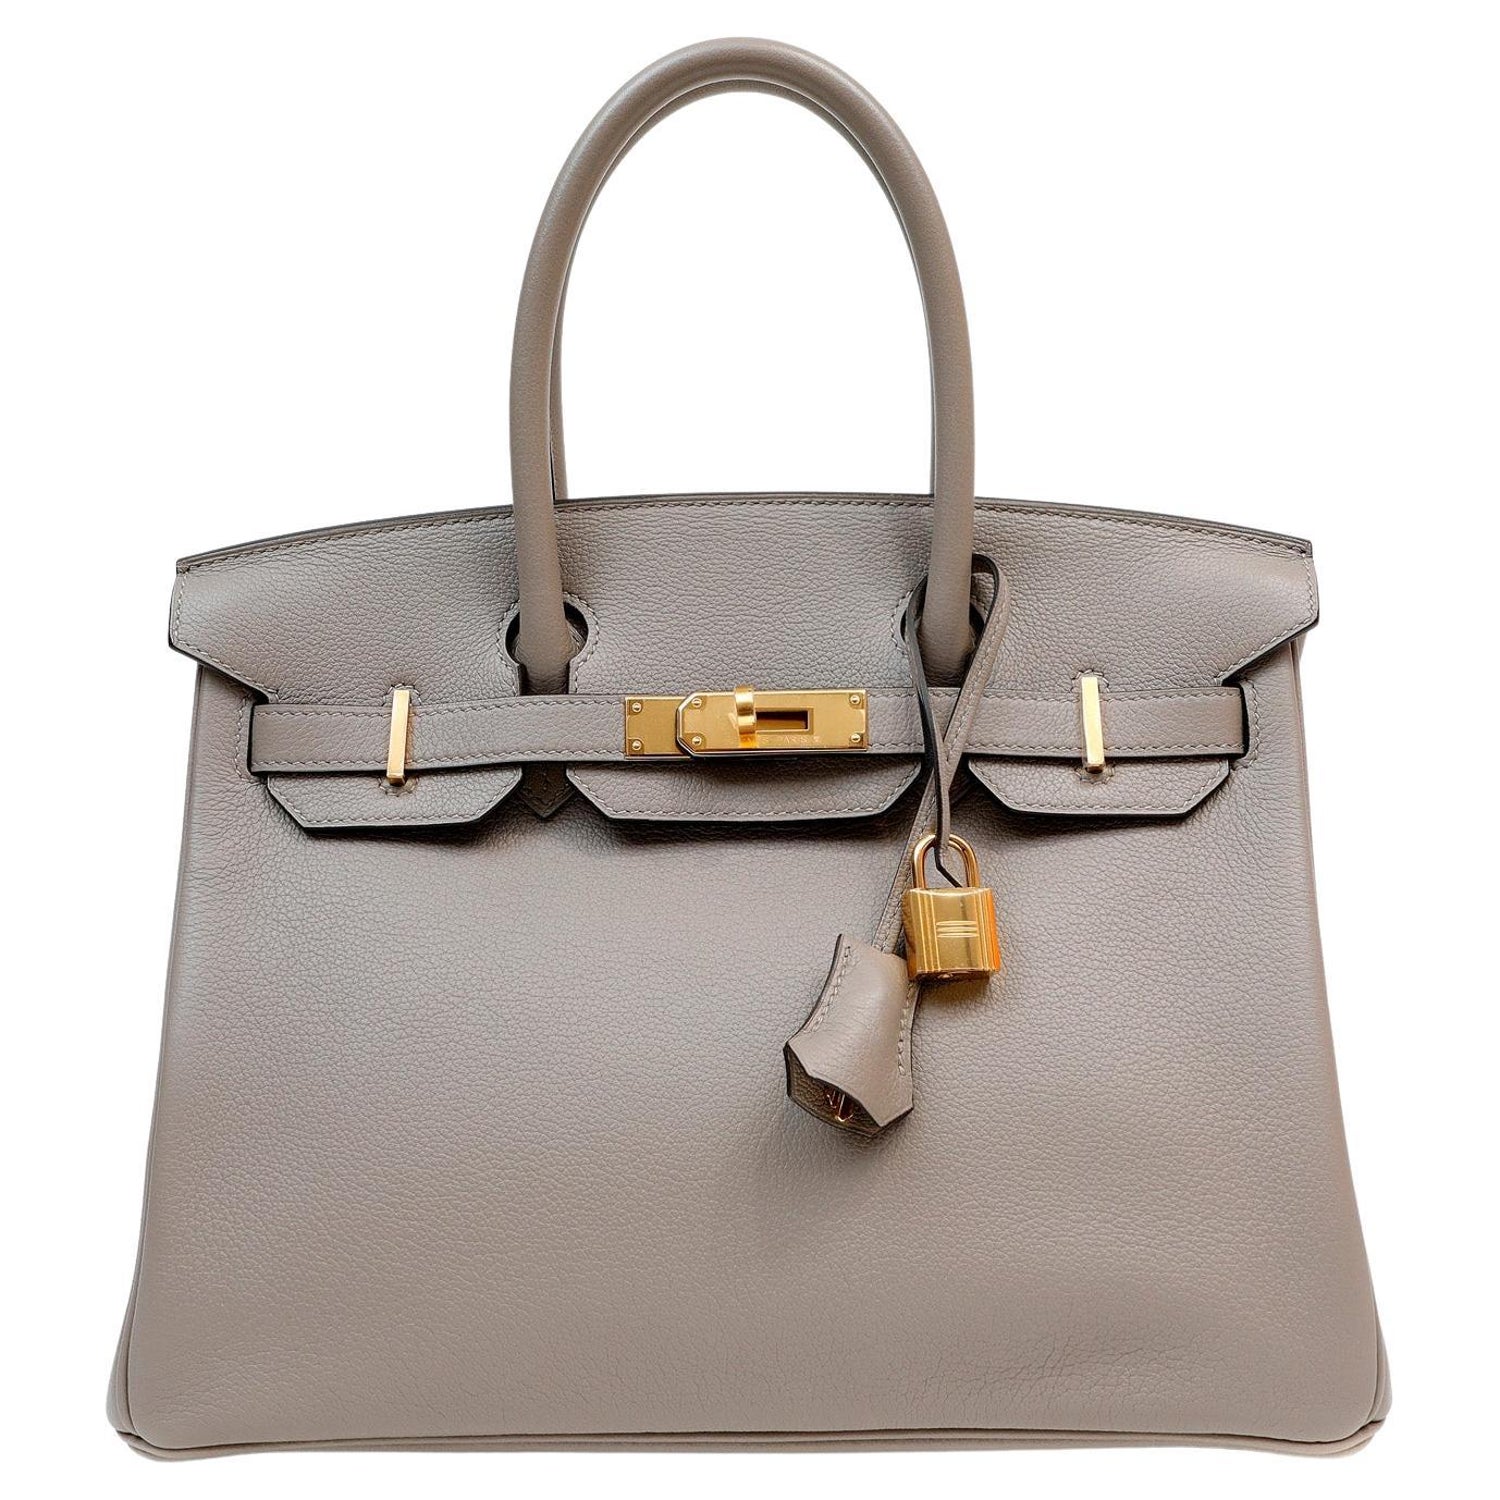 Nib Hermès Birkin 30 PHW Handbag